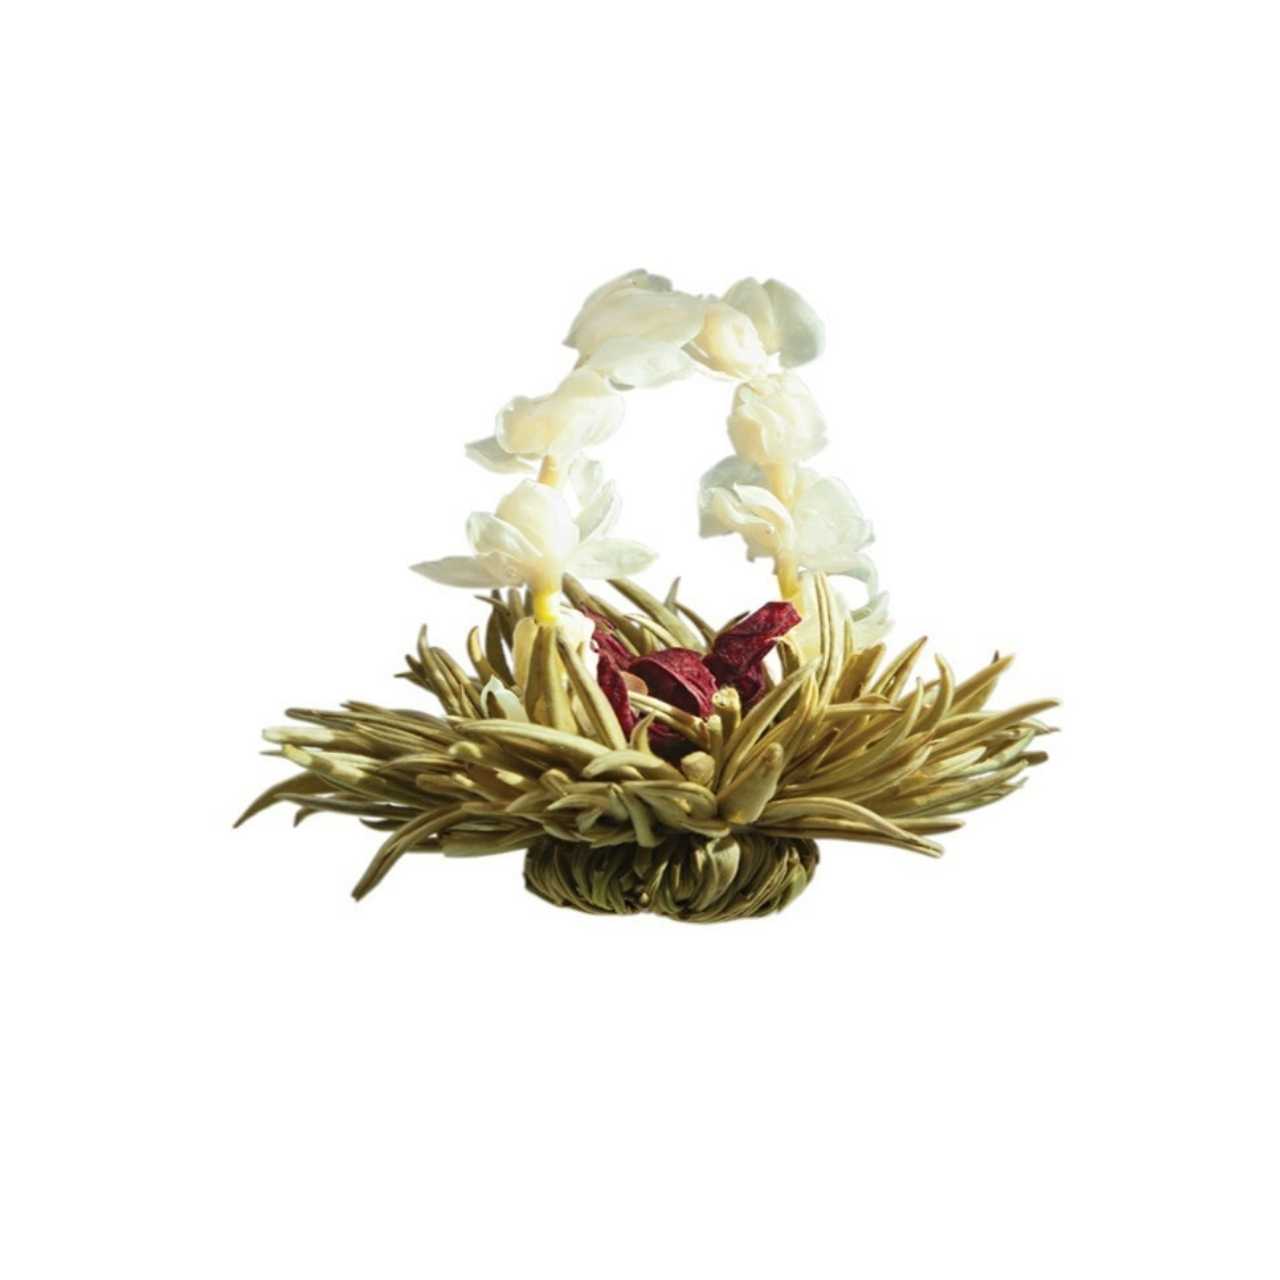 Artisan Flowering Tea Bulbs - Luxury Blooming Tea